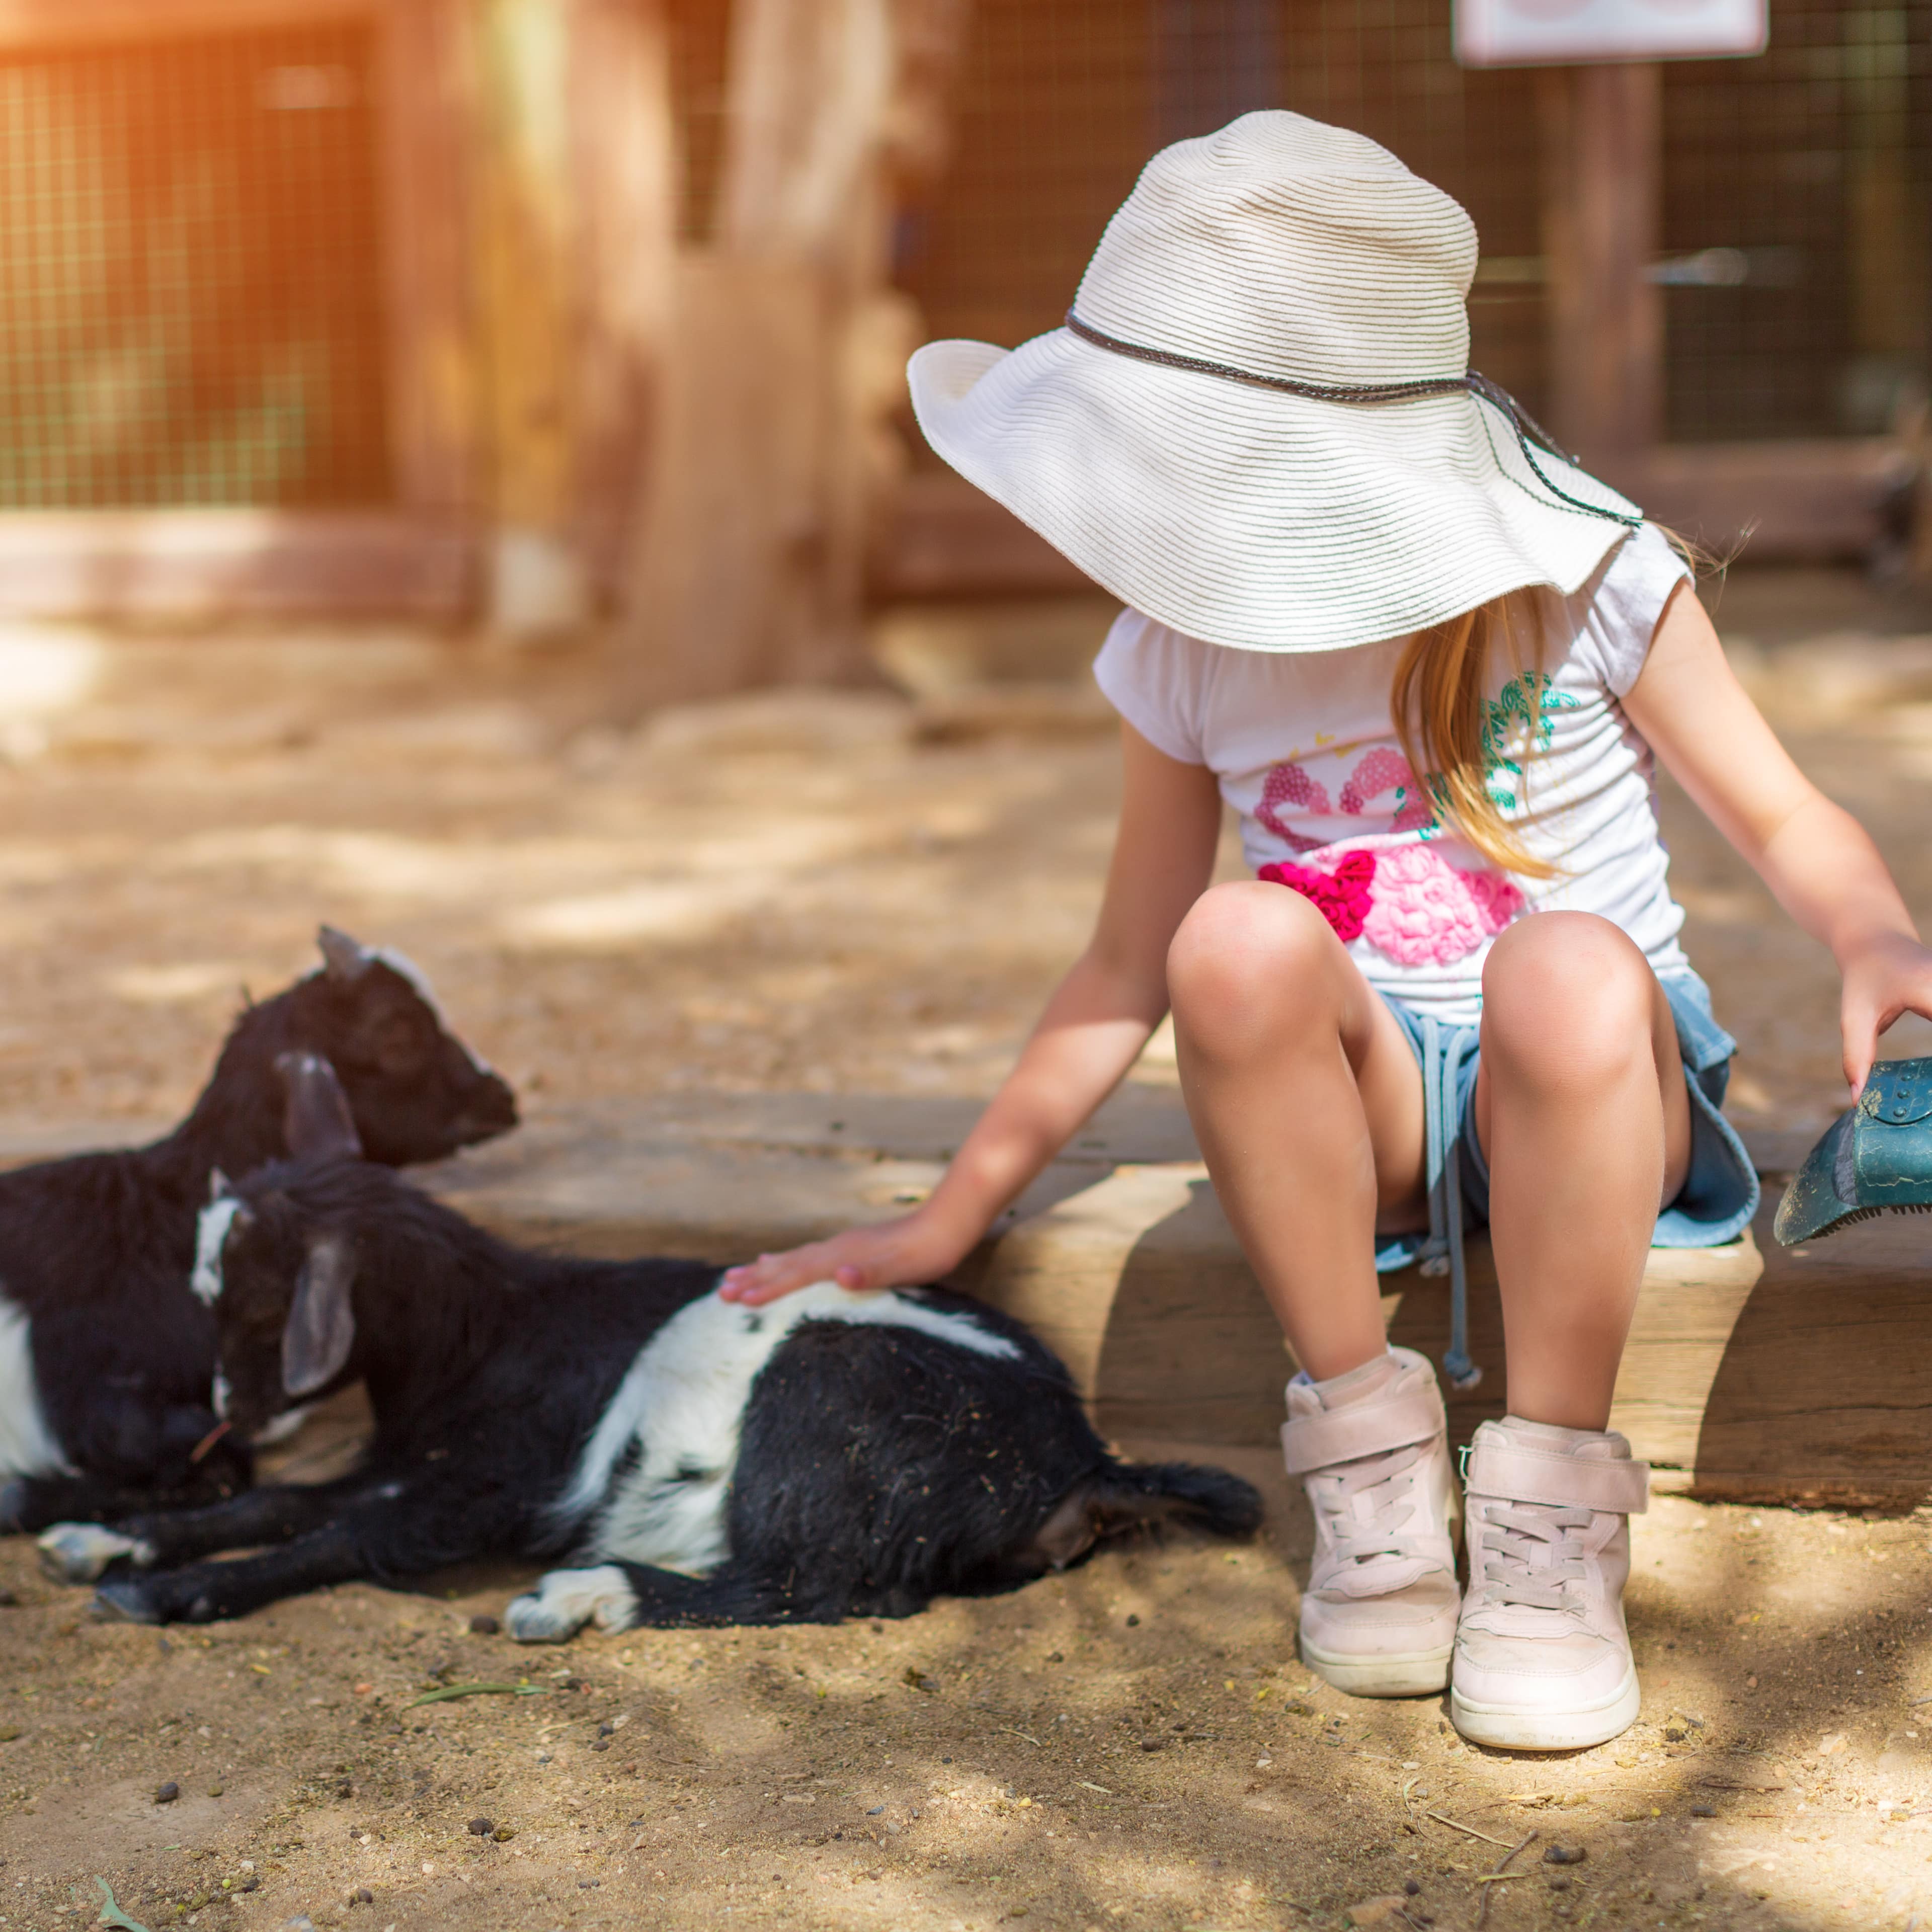 Kleines Mädchen in Sommerkleidung sitzt auf einem Balken und streichelt Zicklein. Sie trägt einen weißen Hut.